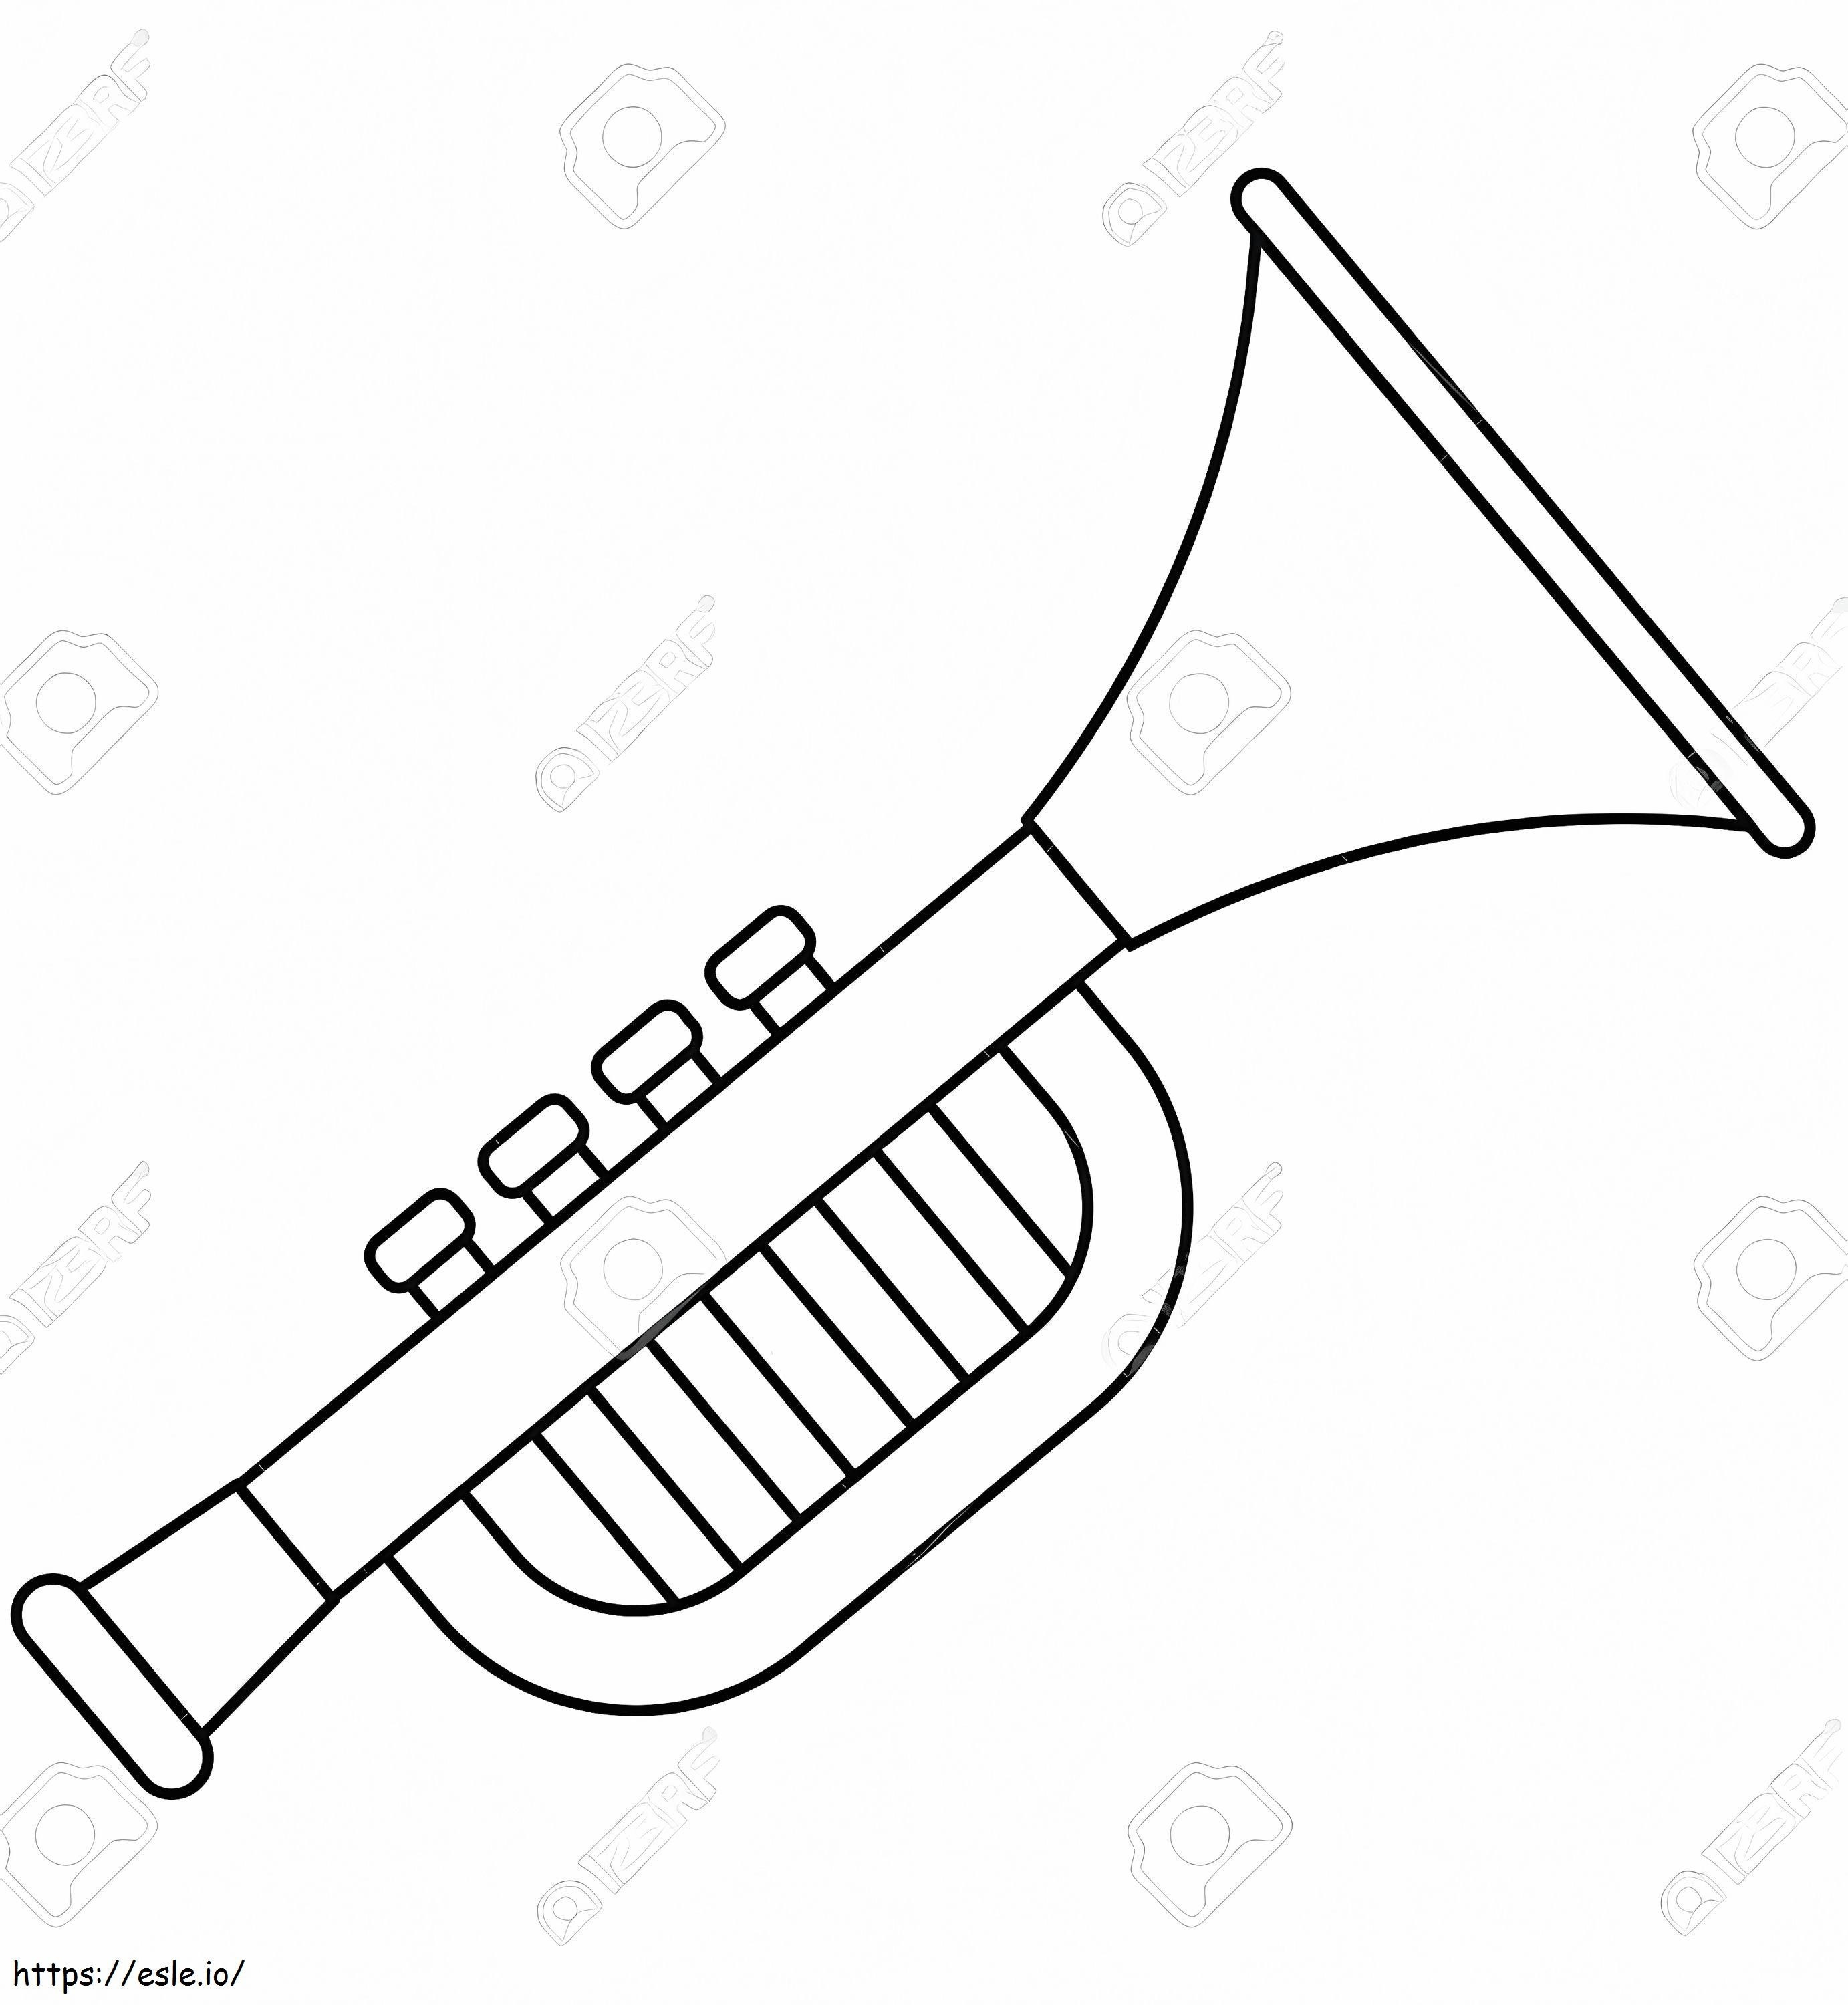 Einfache Trompete 3 ausmalbilder